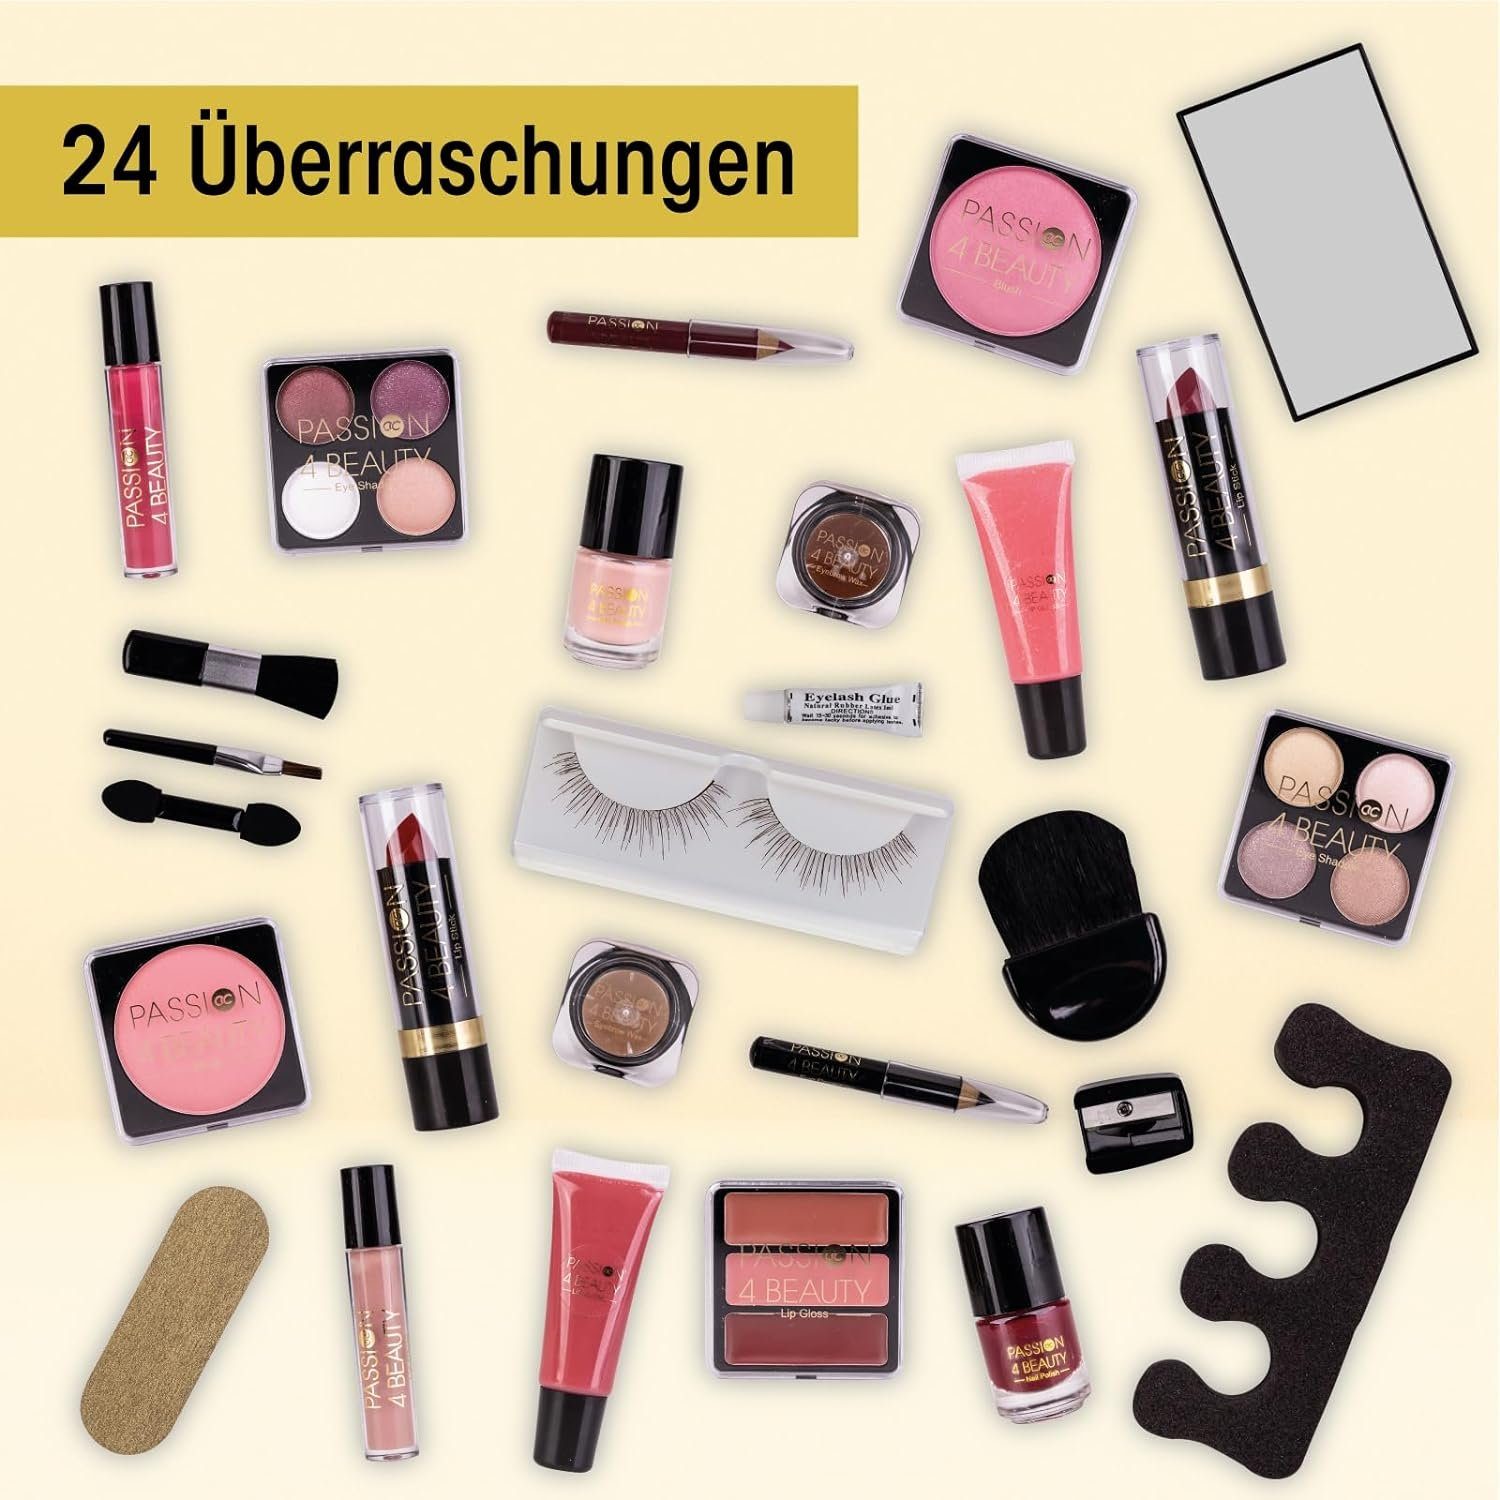 Make-up 24 Lippenstift, Lidschatten, Applikatoren Adventskalender für Nagellack, & Frauen uvm, Kosmetikprodukte ACCENTRA Beauty Wimpern, Adventskalender